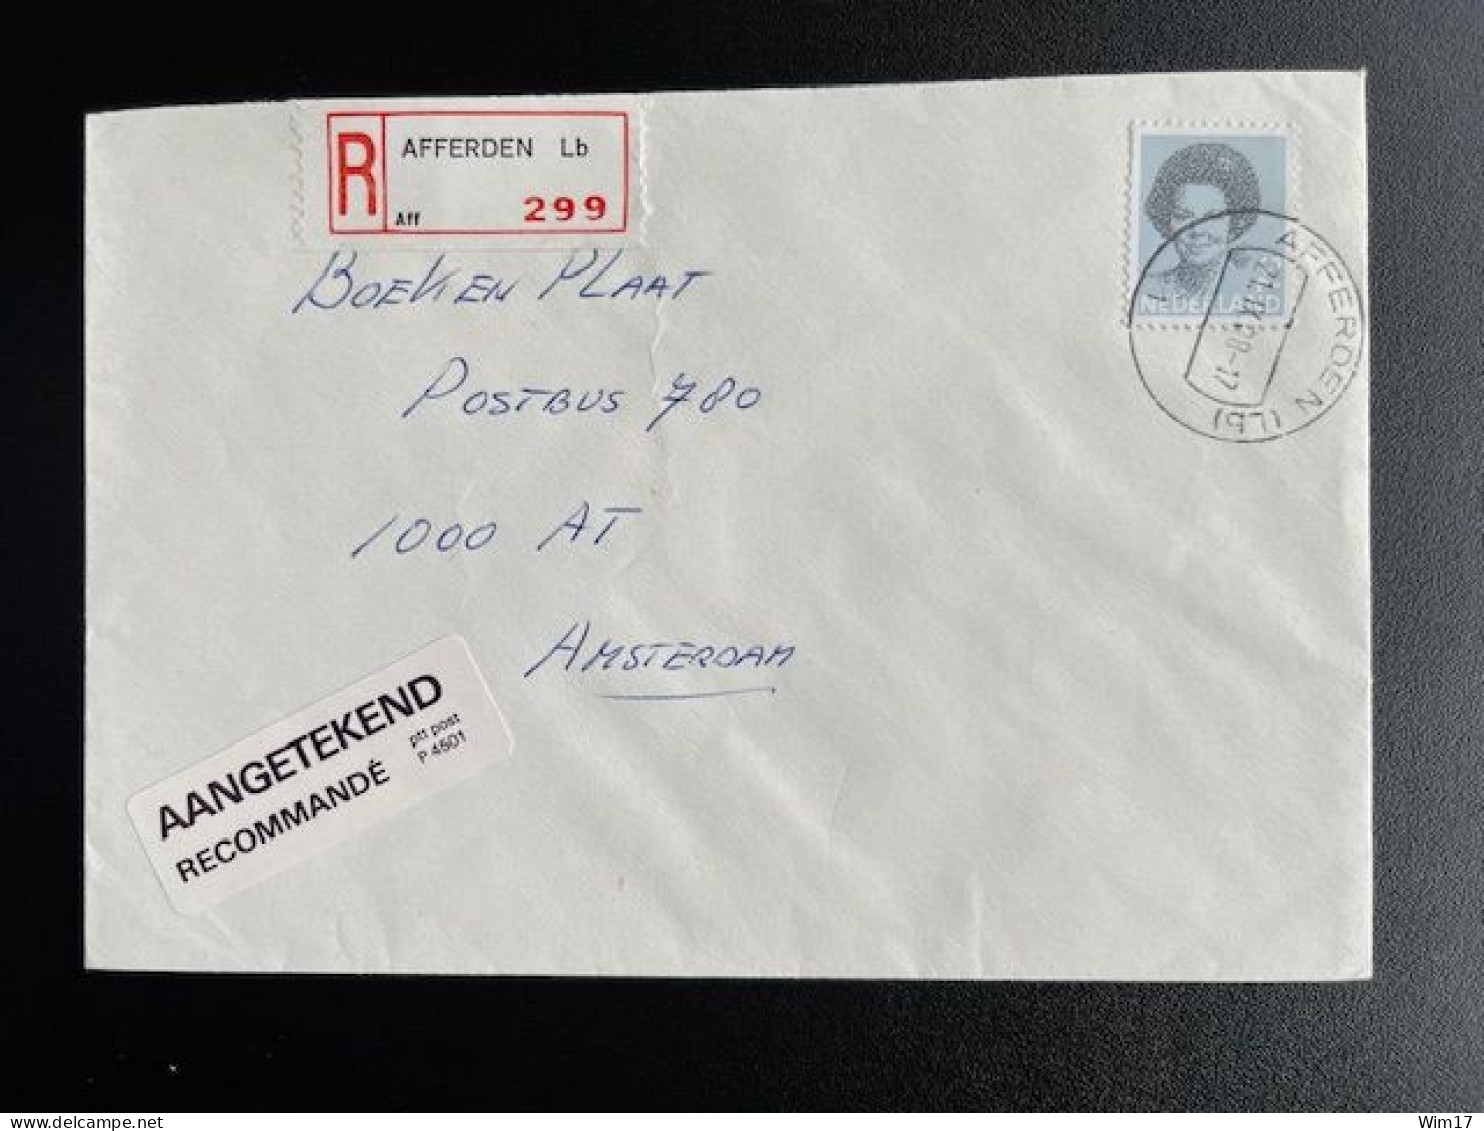 NETHERLANDS 1988 REGISTERED LETTER AFFERDEN (LB) TO AMSTERDAM 21-09-1988 NEDERLAND AANGETEKEND - Covers & Documents